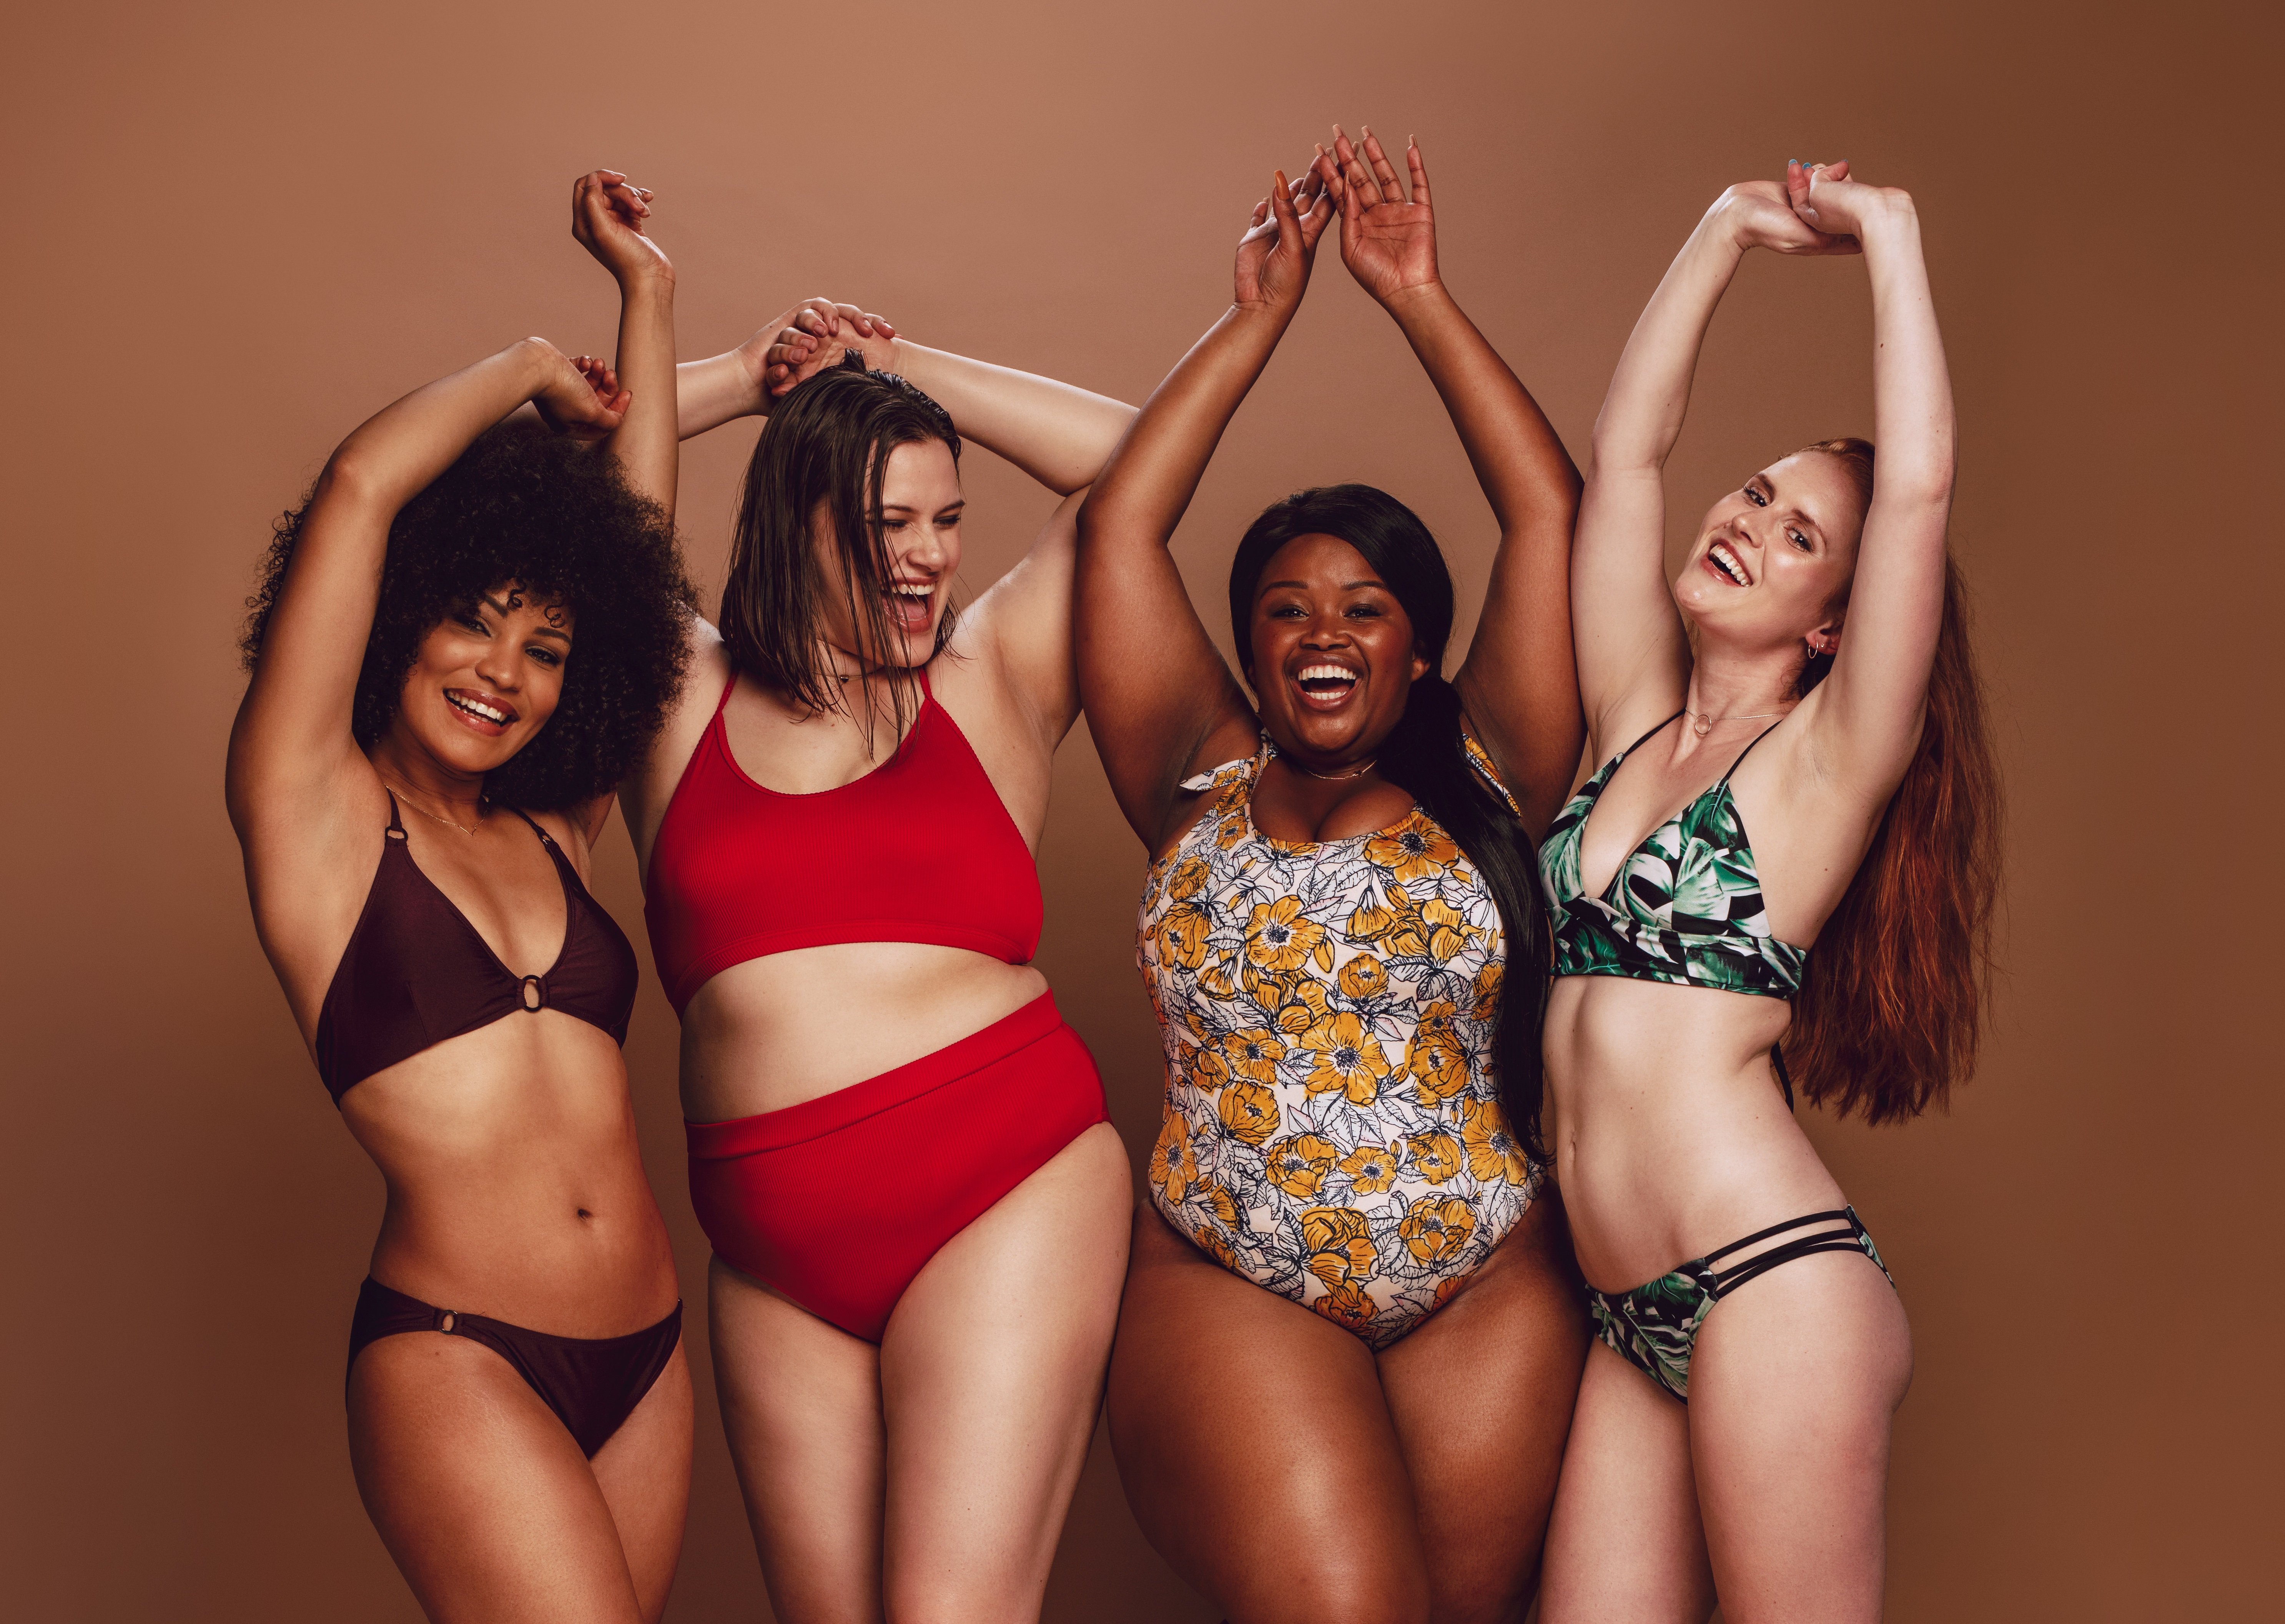 Grupo de mujeres con diversas formas de cuerpo y distintos trajes de baño. | Foto: Shutterstock